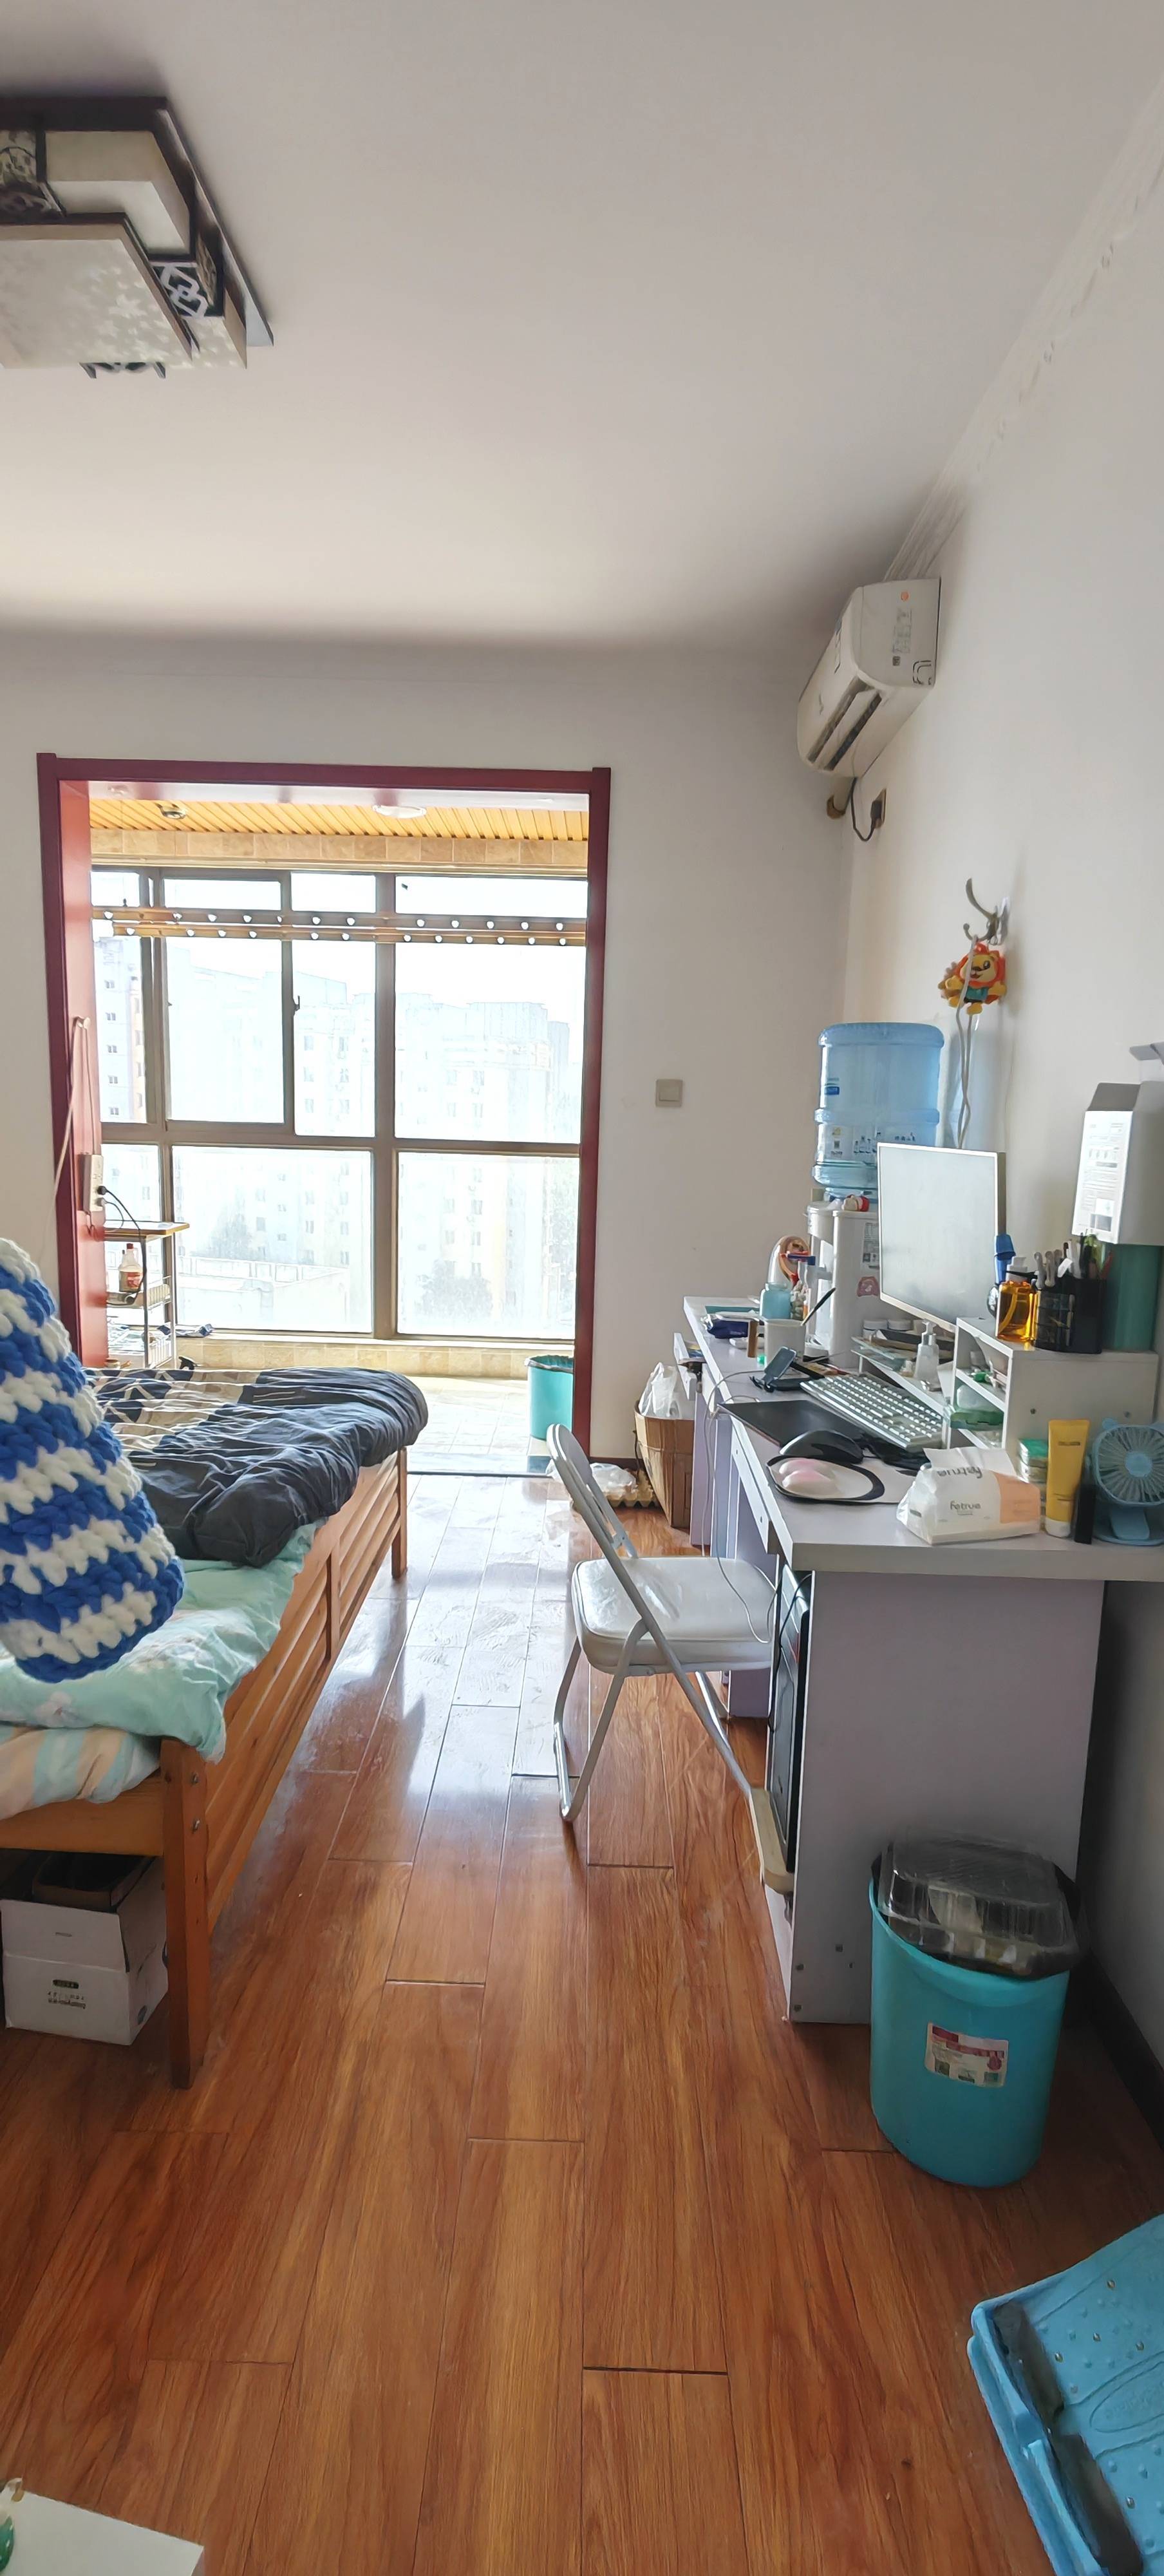 Cozy Home-Clean&Comfy-No Gender Limit-Hustle & Bustle